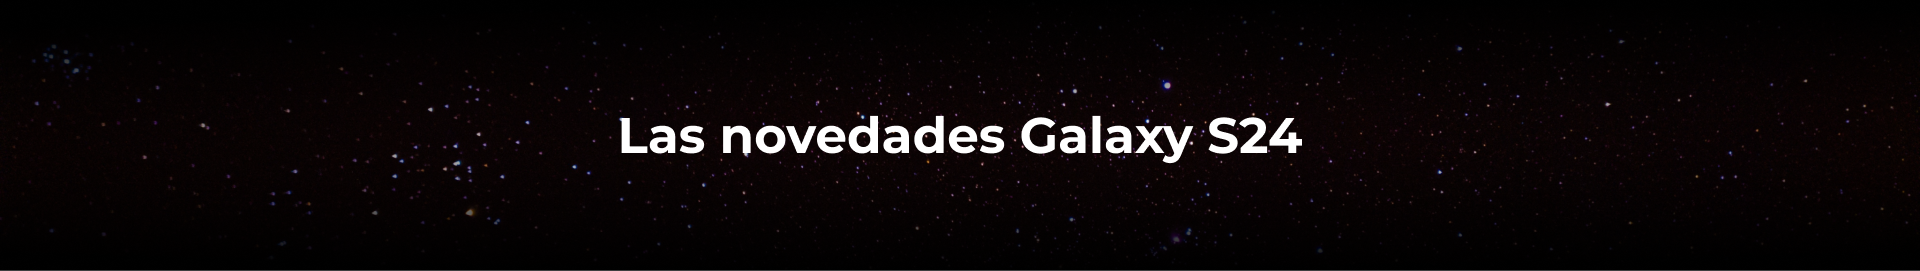 banniere noire avec galaxie pour annoncer les nouveautés du Galaxy S24 